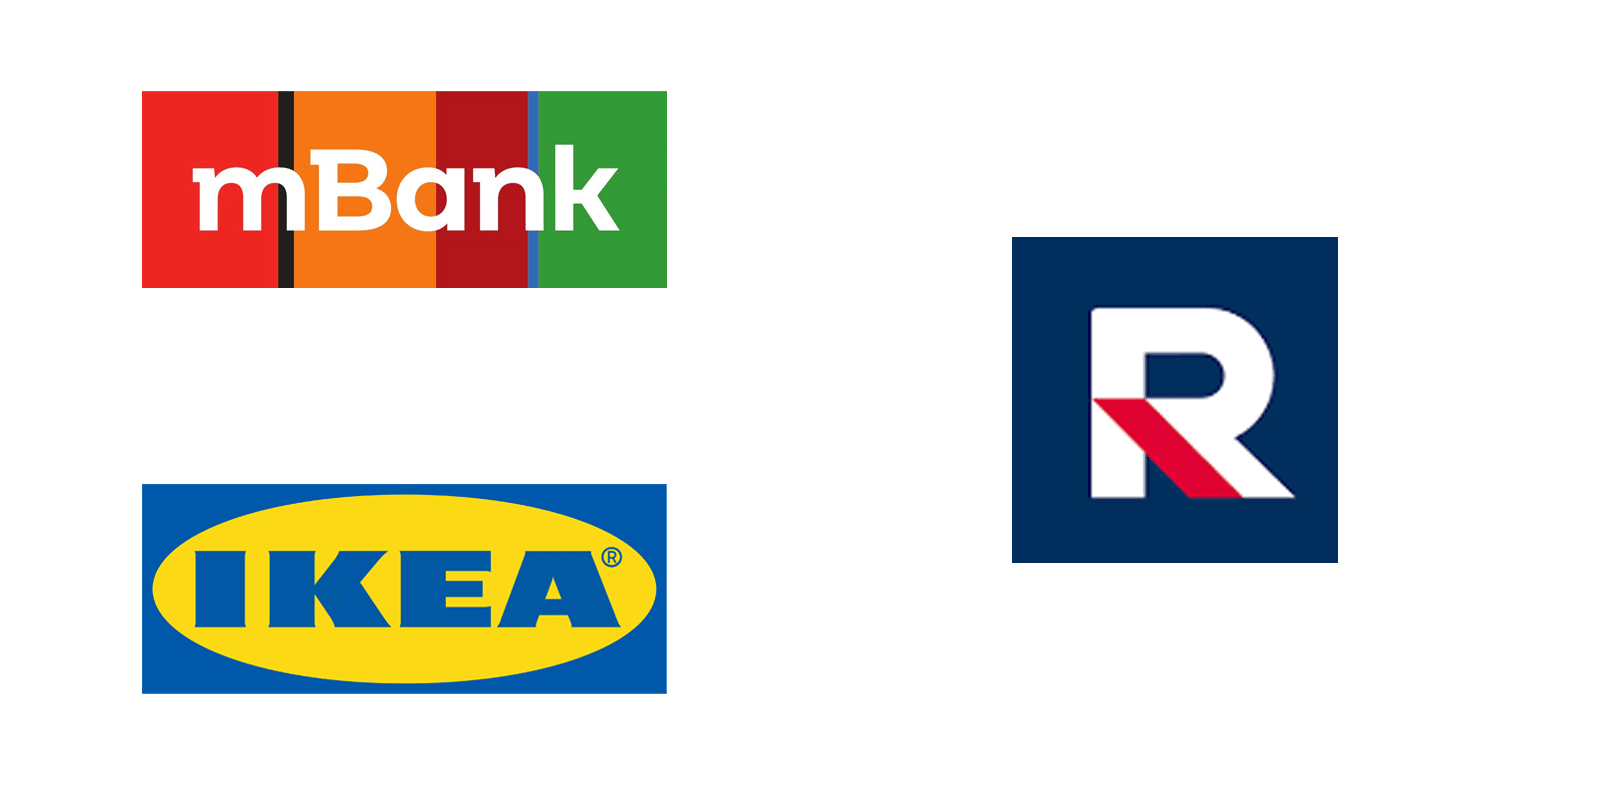 Ikea Polska i mBank wstrzymują reklamy w TV Republika po kontrowersyjnych wypowiedziach mBank MEDIARUN COM MBANK IKEA TV REPUBLIKA V1